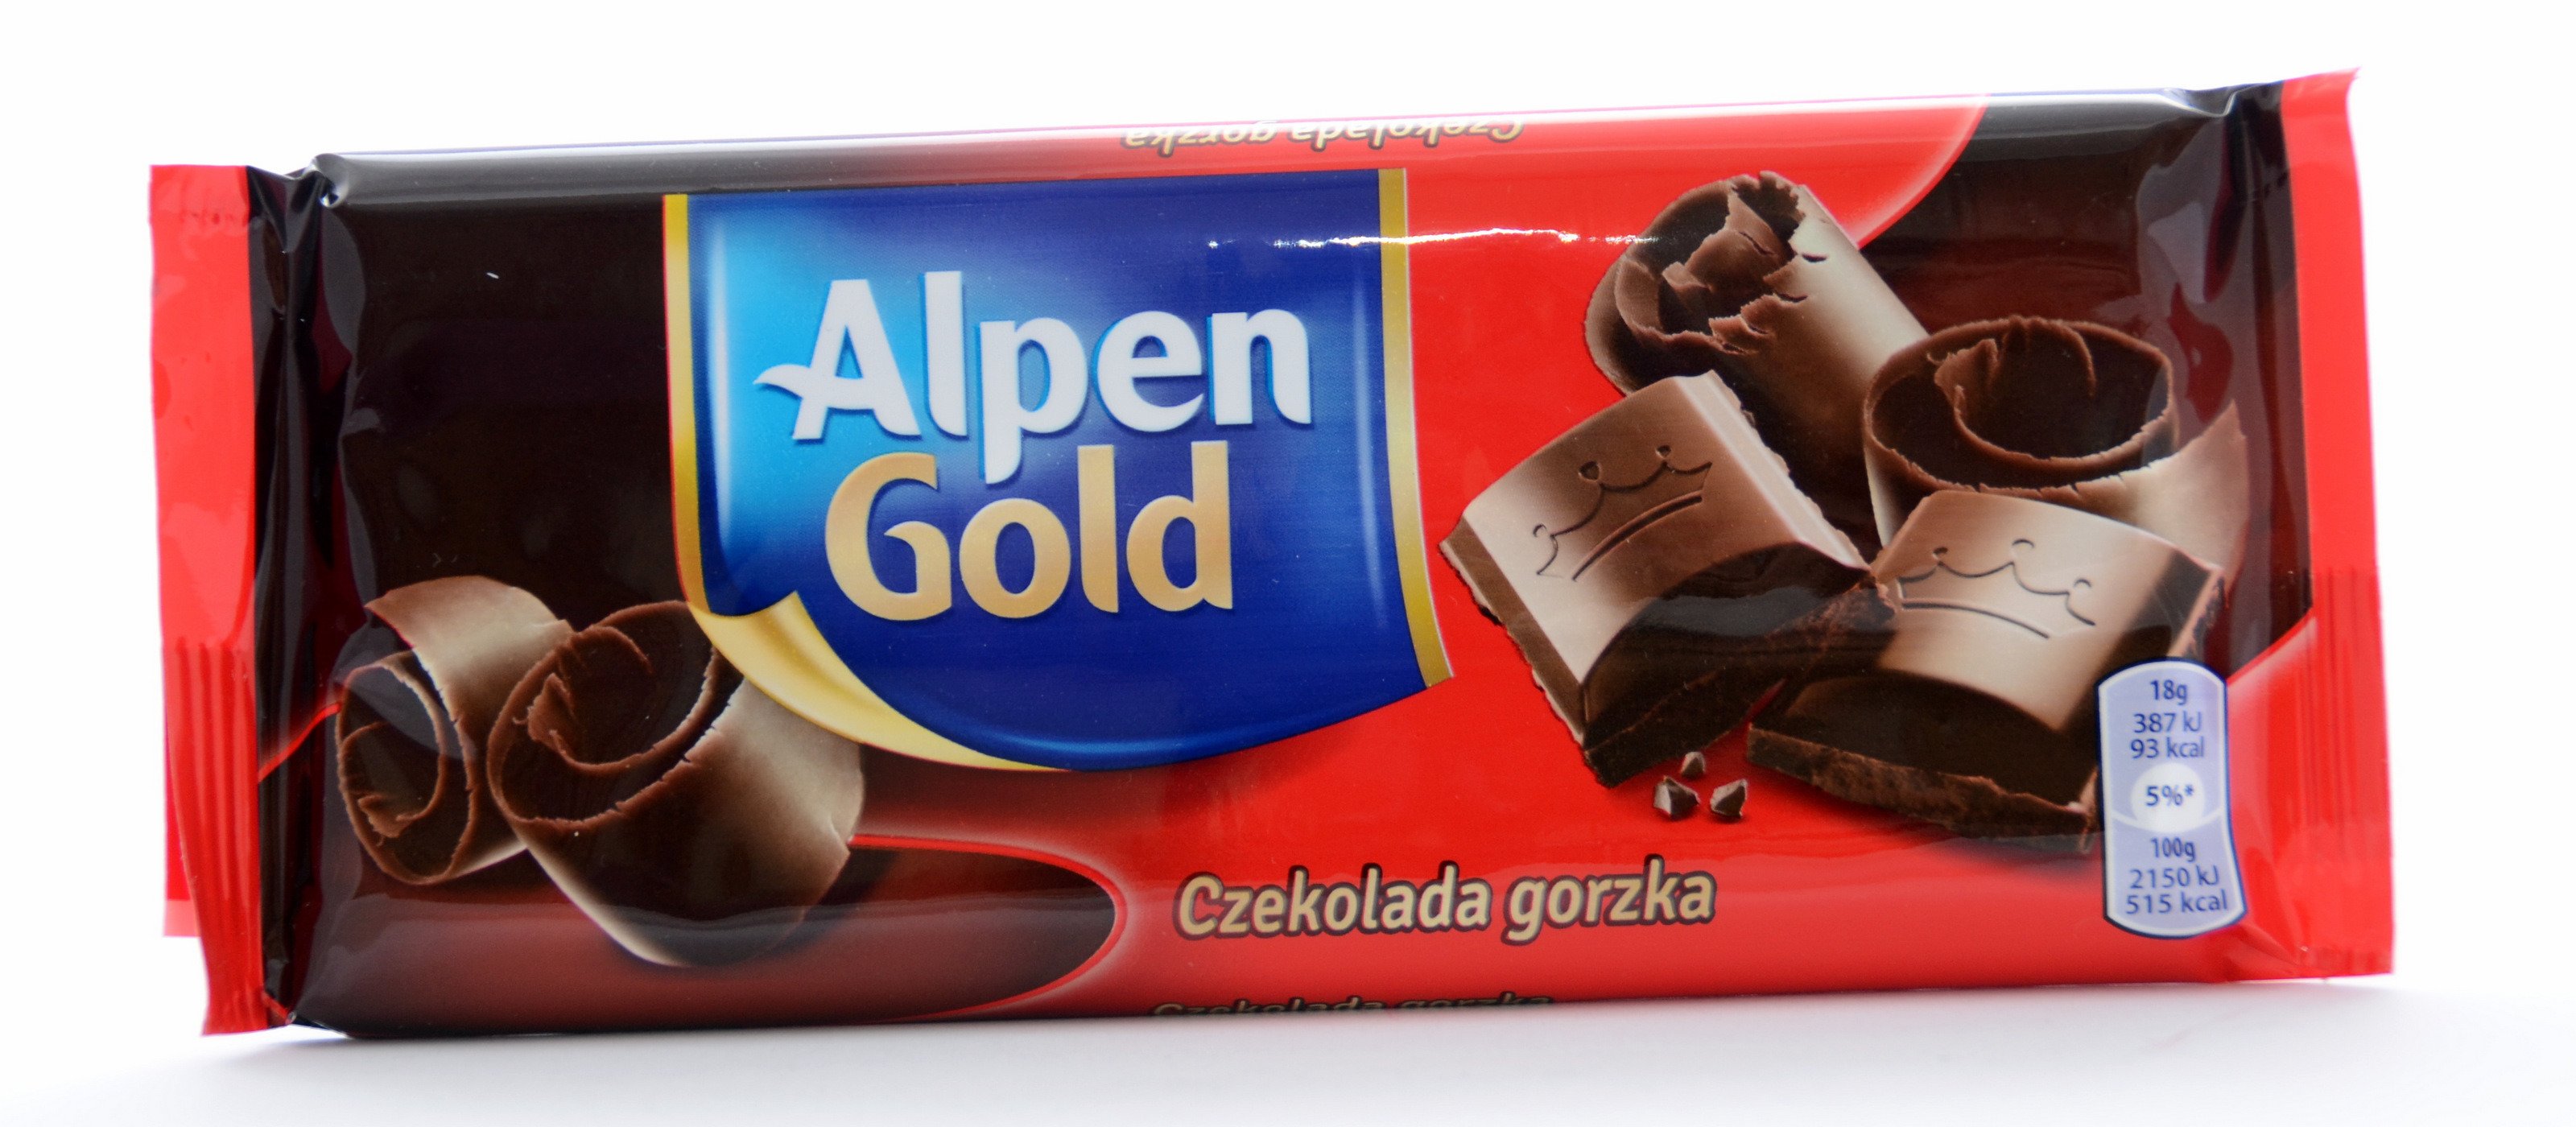 Znalezione obrazy dla zapytania alpen gold gorzka czekolada